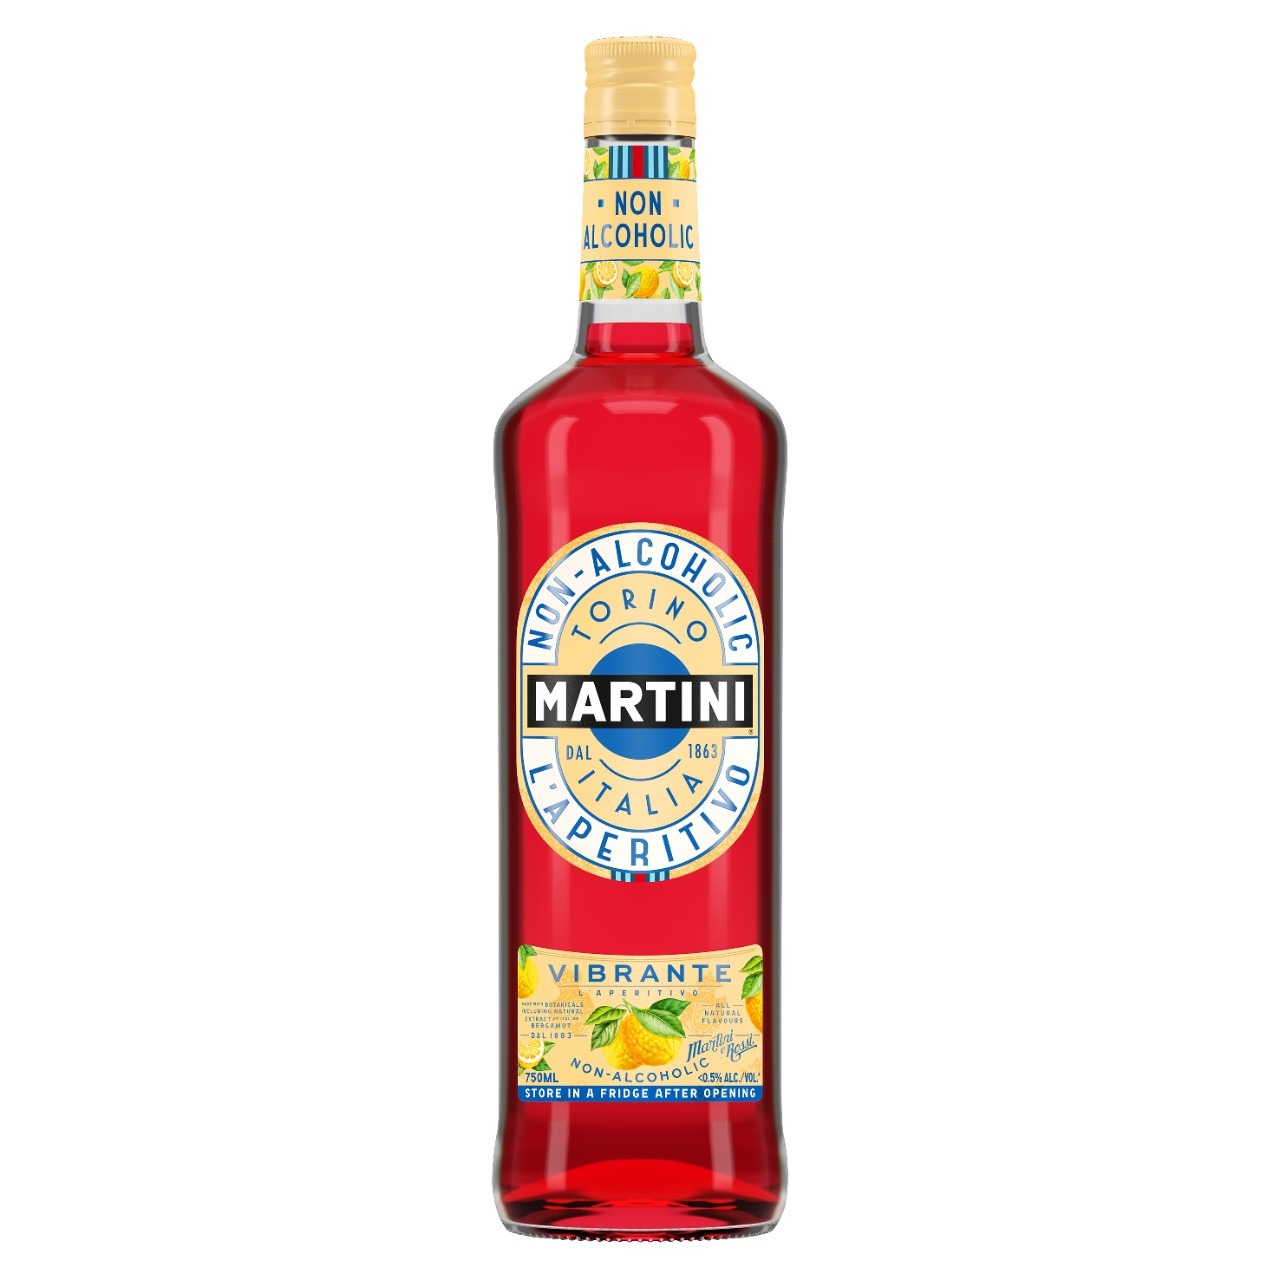 Tanzania Zakje strategie Martini vermouth Vibrante Martini & Rossi Torino Italië alcoholvrij kopen?  | Gratis verzending vanaf € 50,- | Wijnkeuze-online.nl